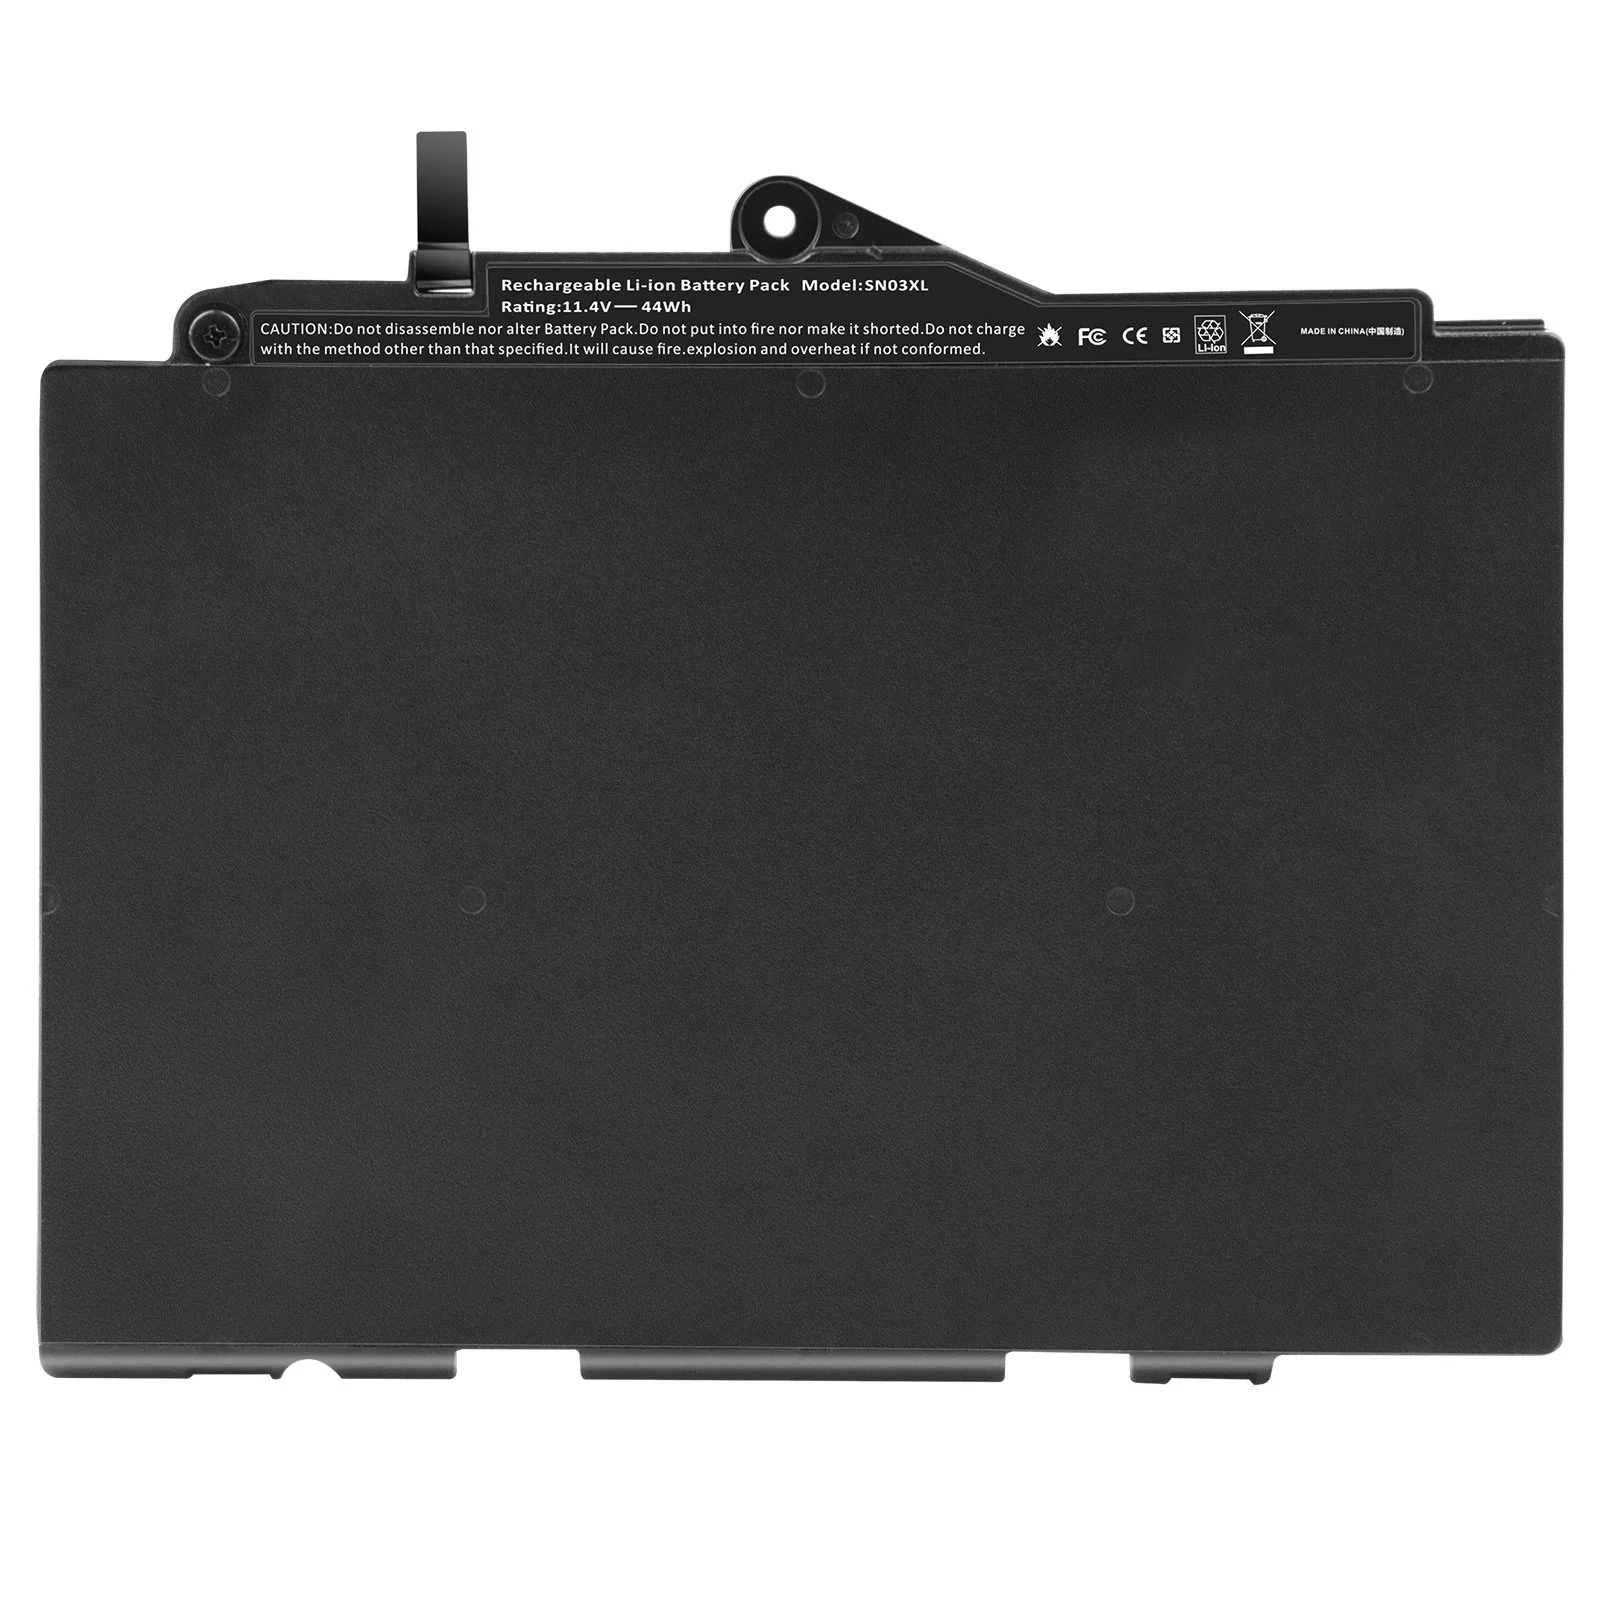 Substituição da bateria do laptop Sn03XL para HP Elitebook 725 G3 Elitebook 725 G4 Elitebook 820 G3 Elitebook 820 G4 St03XL Hstnn-Ub5t Hstnn-Ub6T